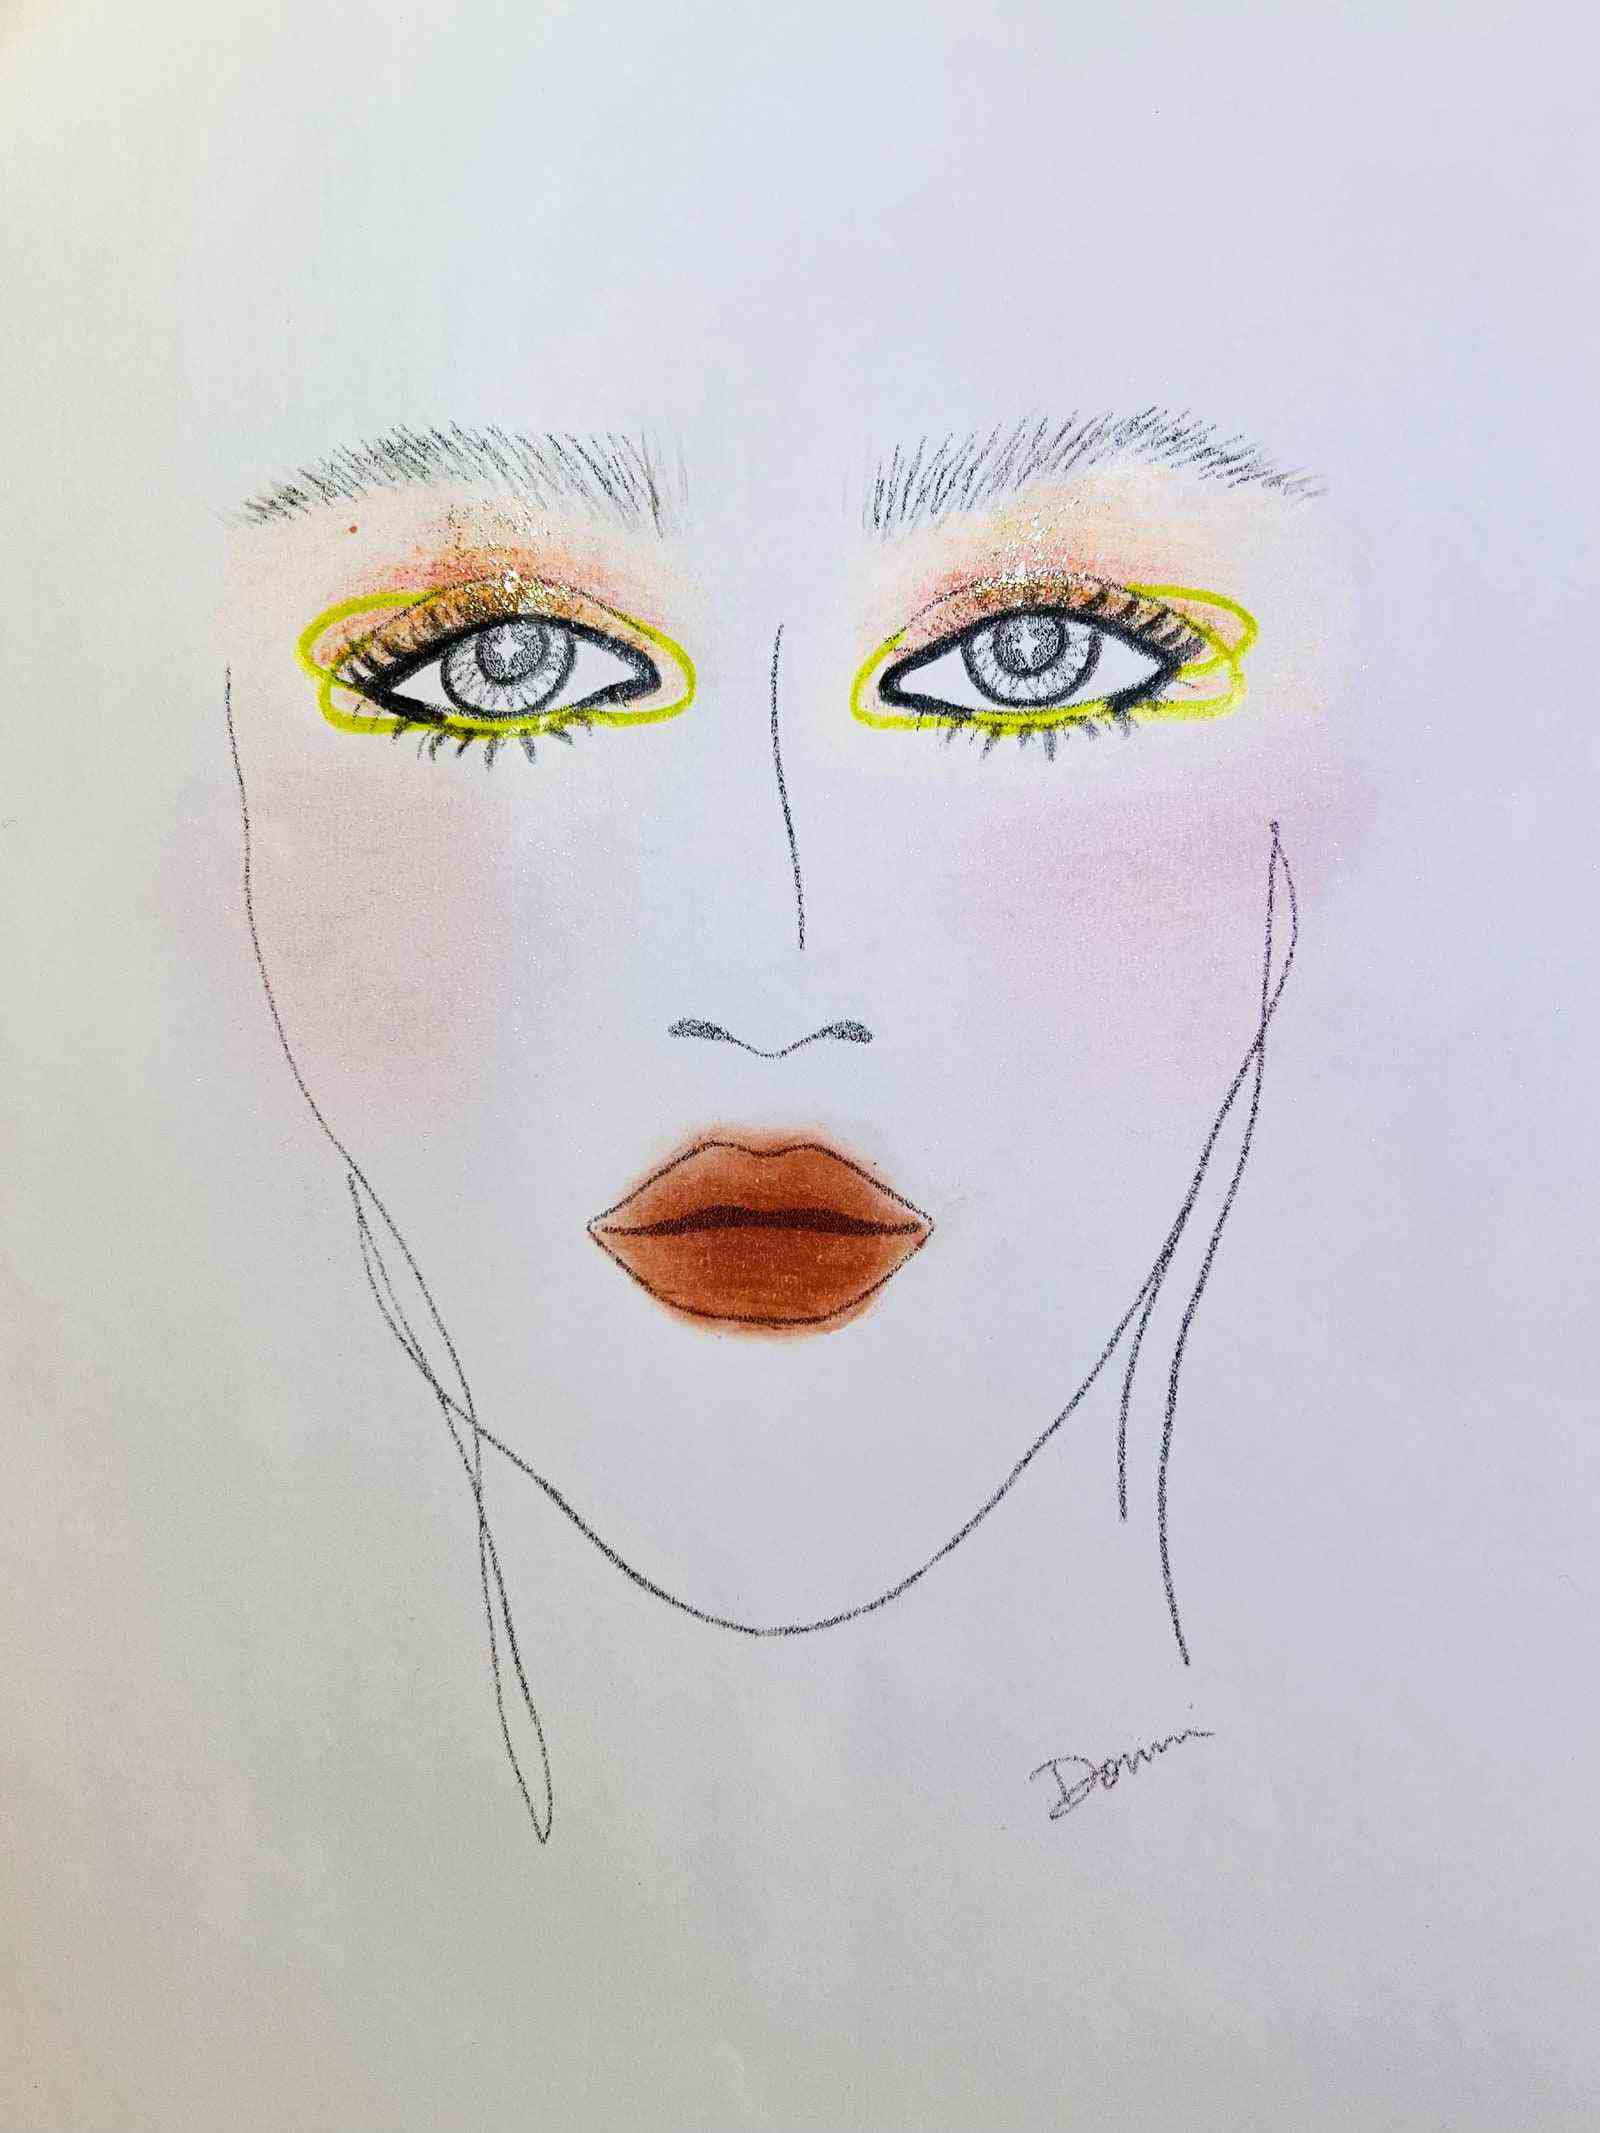 Gesichtsdiagramm des Gesichts mit orangefarbenem Lidschatten und dunkelorangefarbenem Lippenstift